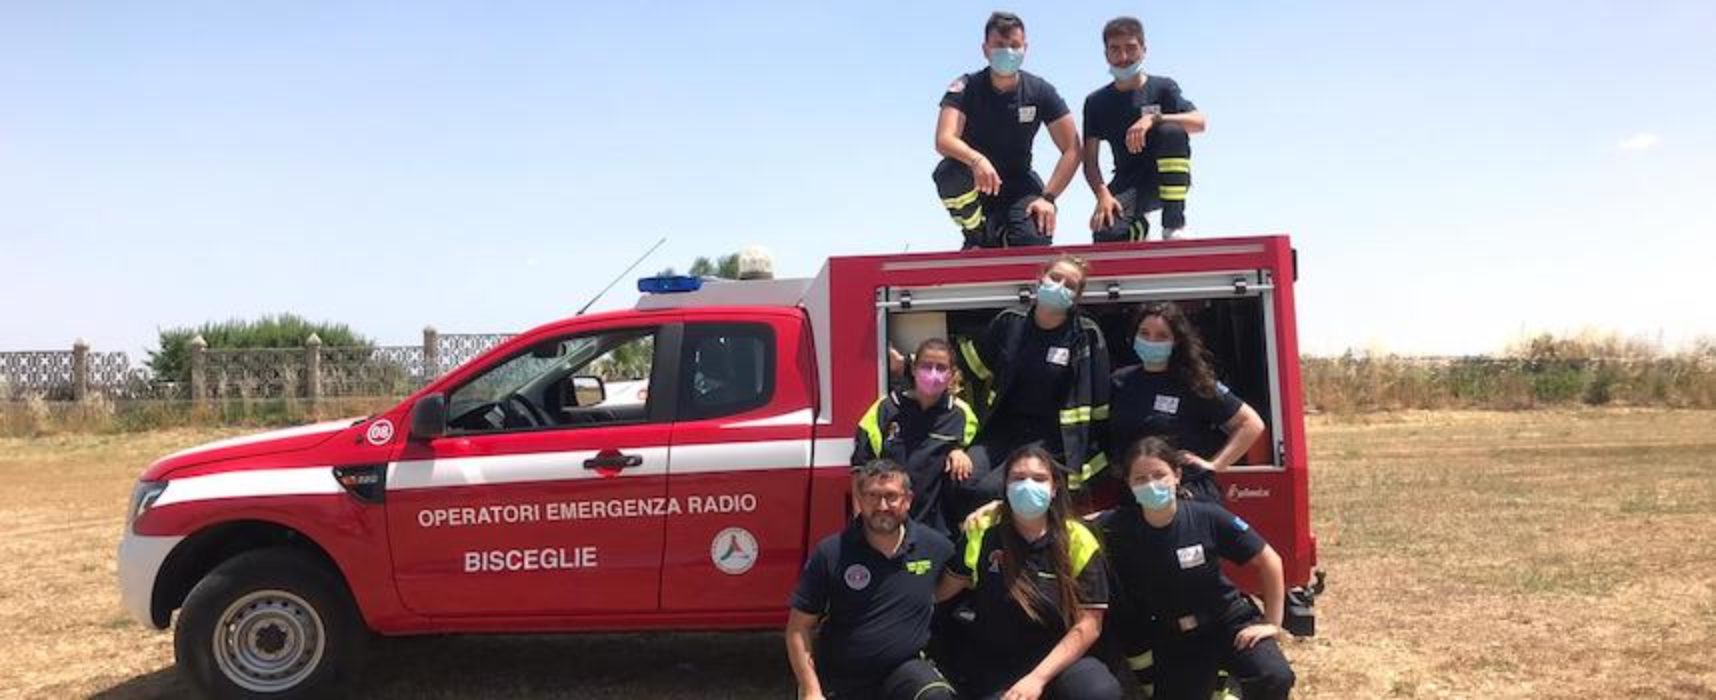 Operatori emergenza radio Bisceglie abilitati al corso Anti Incendio Boschivo / FOTO